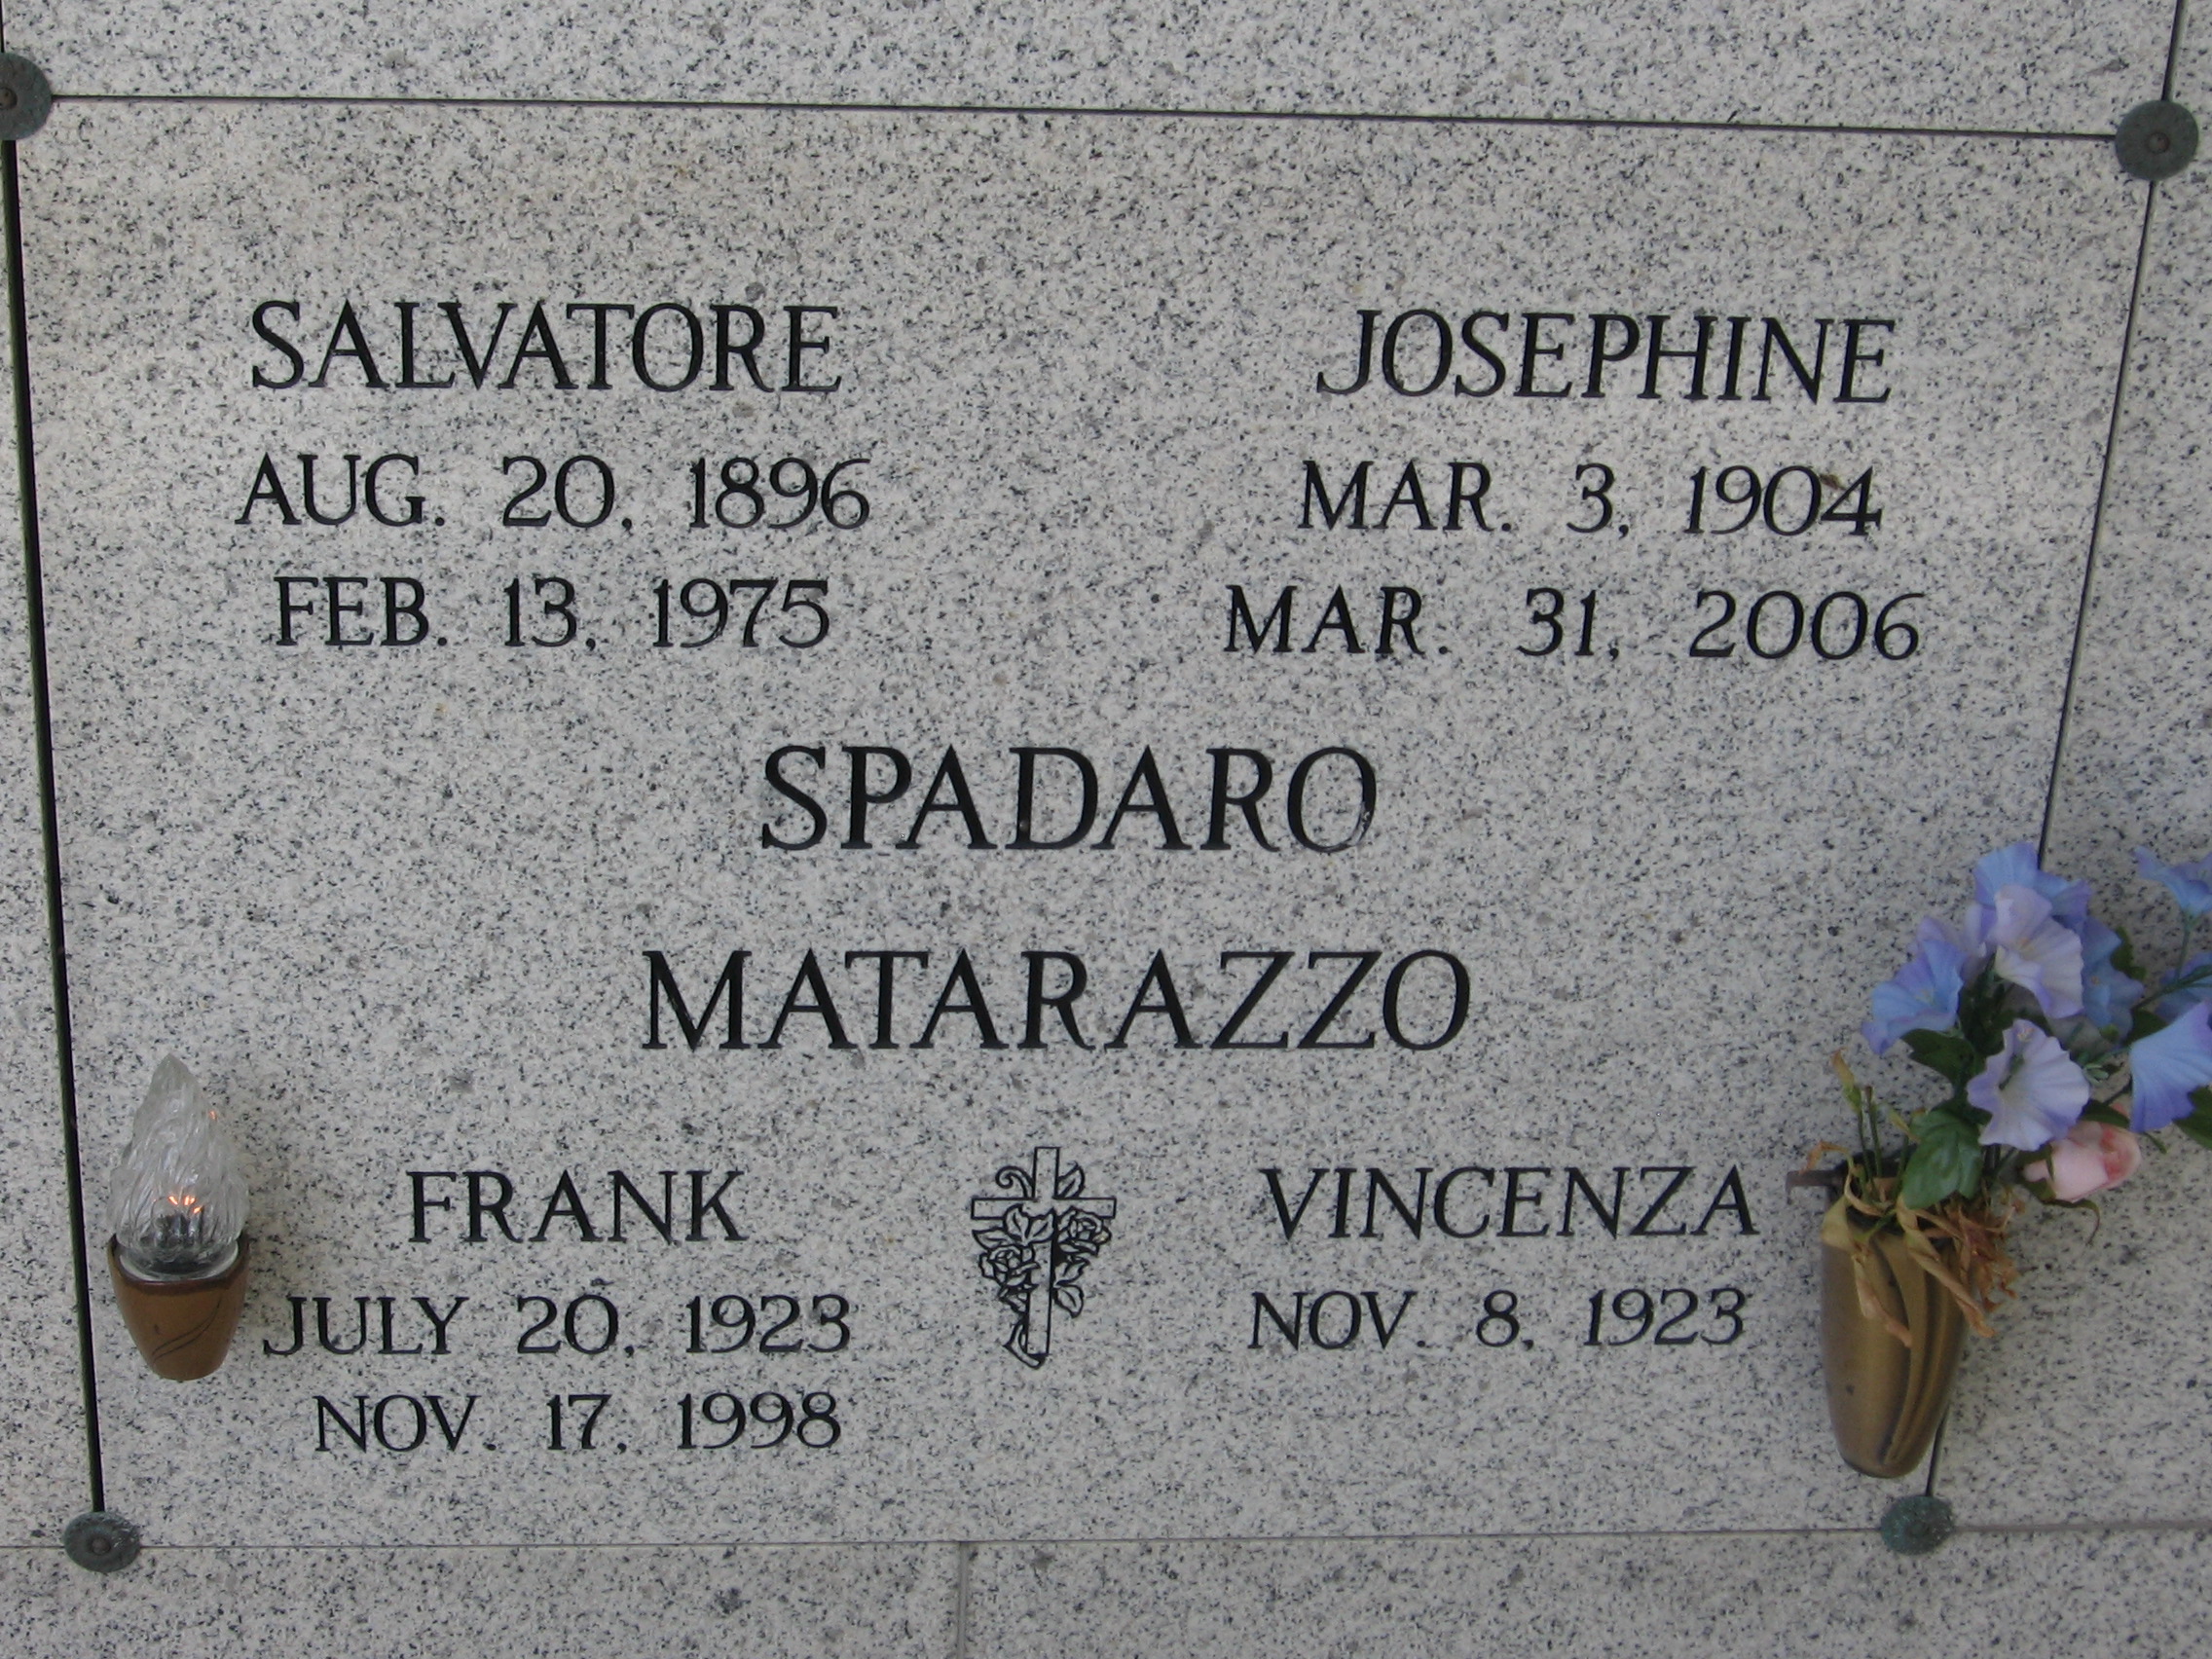 Josephine Spadaro